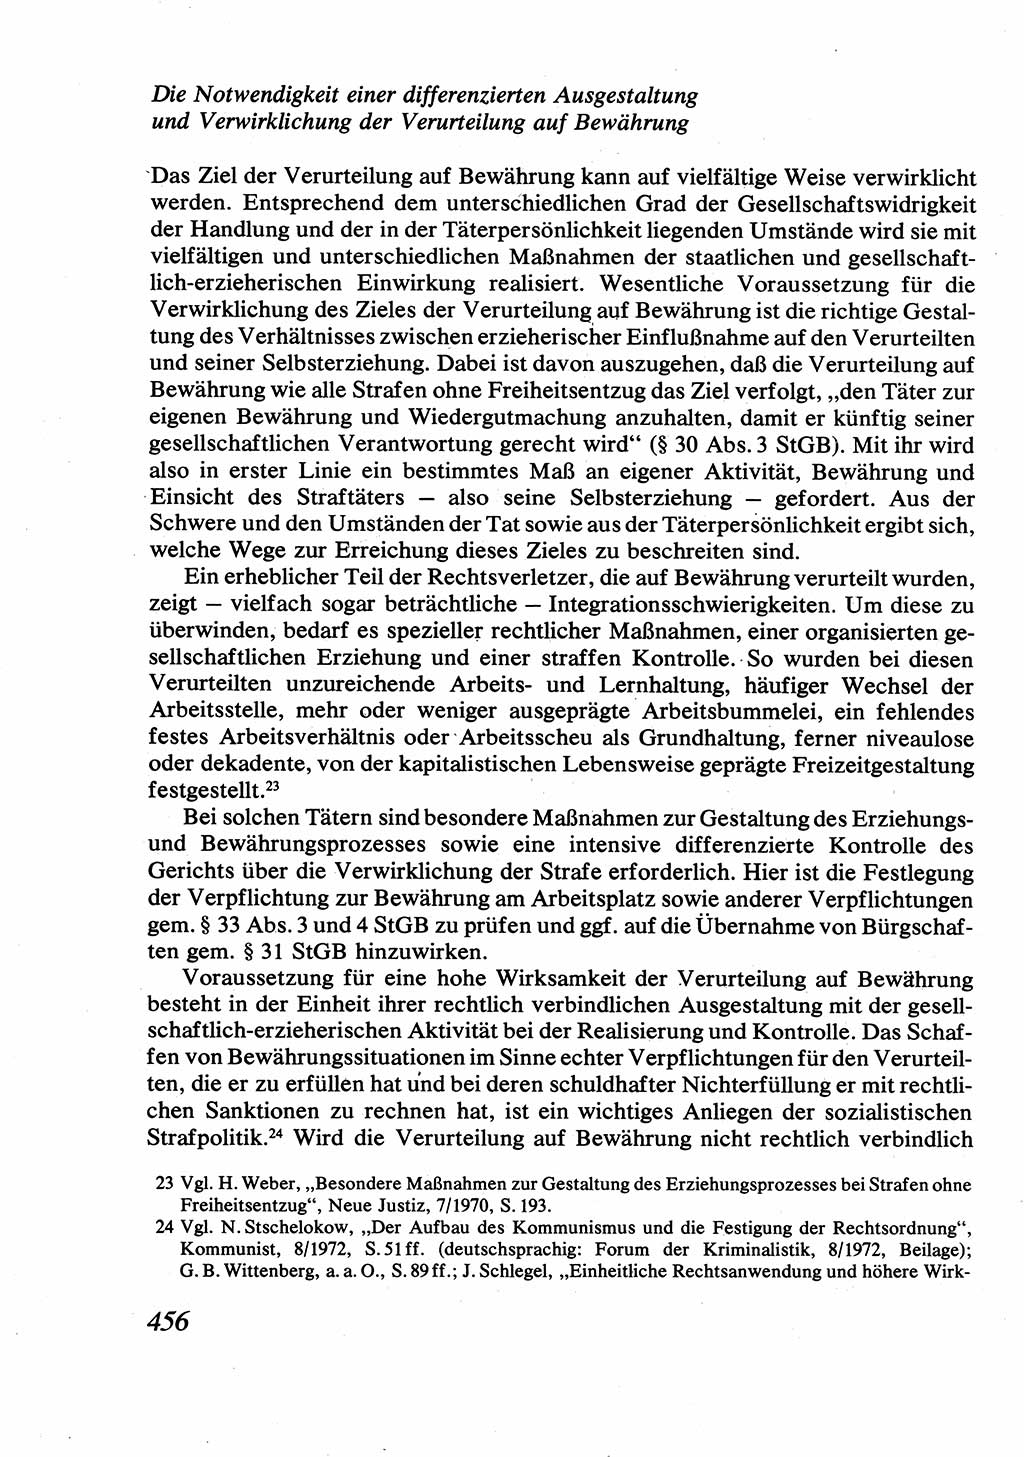 Strafrecht [Deutsche Demokratische Republik (DDR)], Allgemeiner Teil, Lehrbuch 1976, Seite 456 (Strafr. DDR AT Lb. 1976, S. 456)